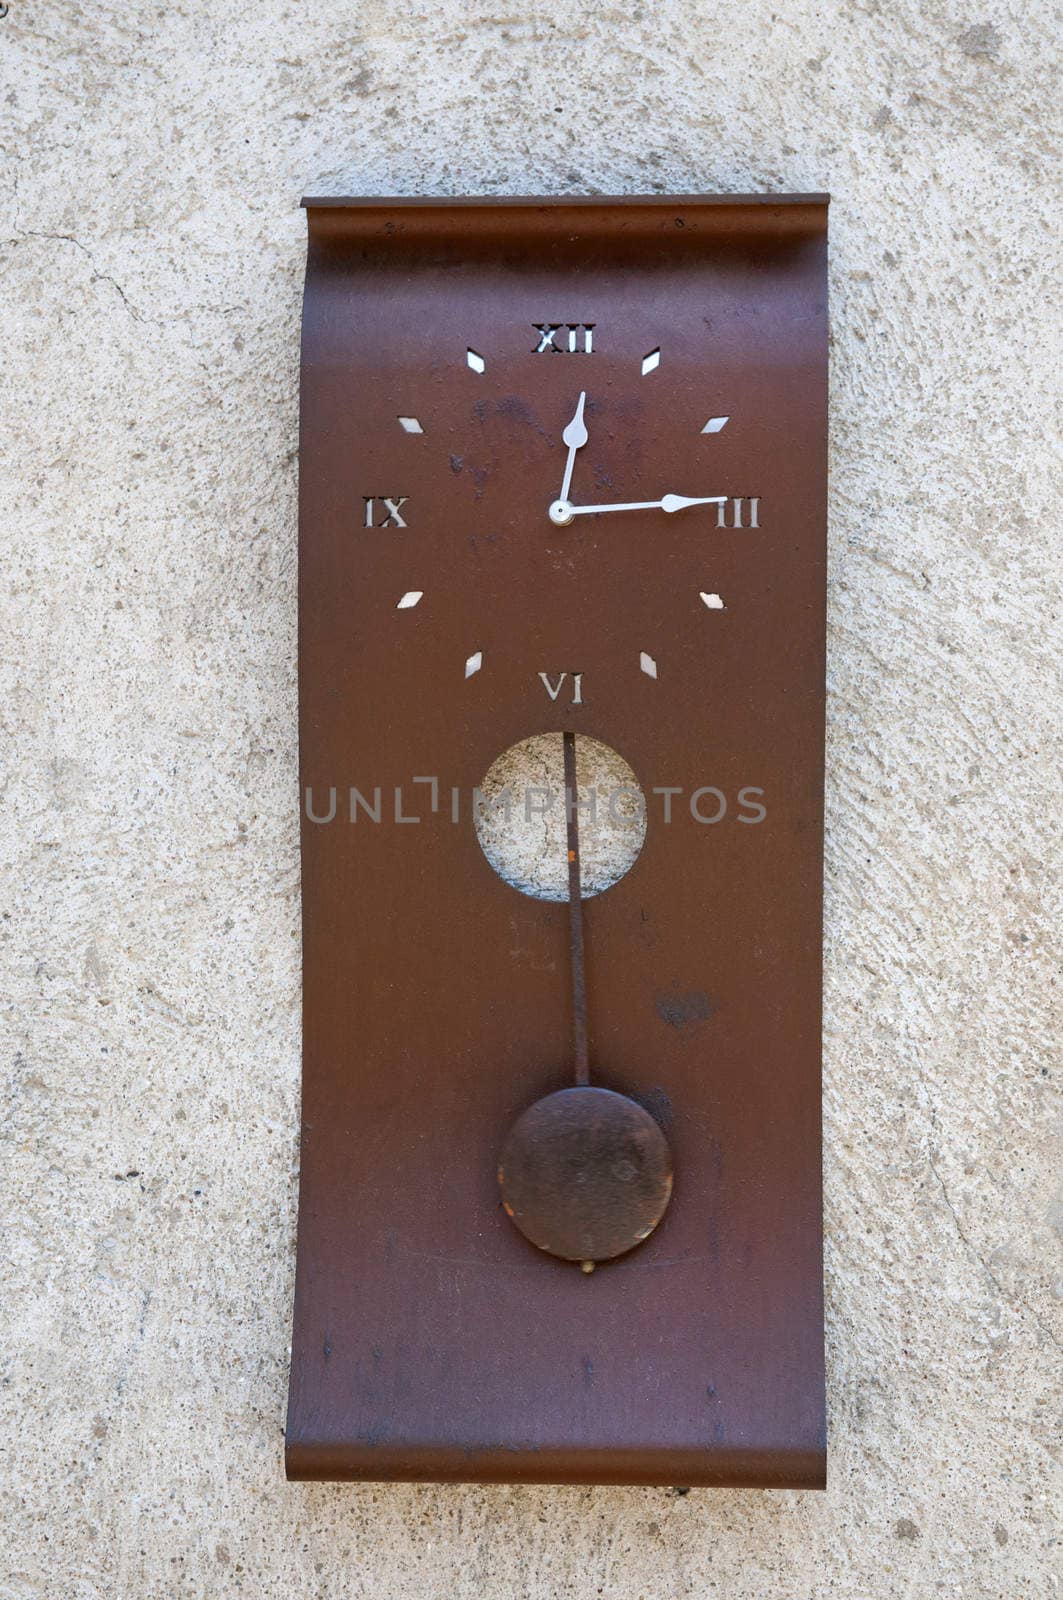 antique clock with pendulum